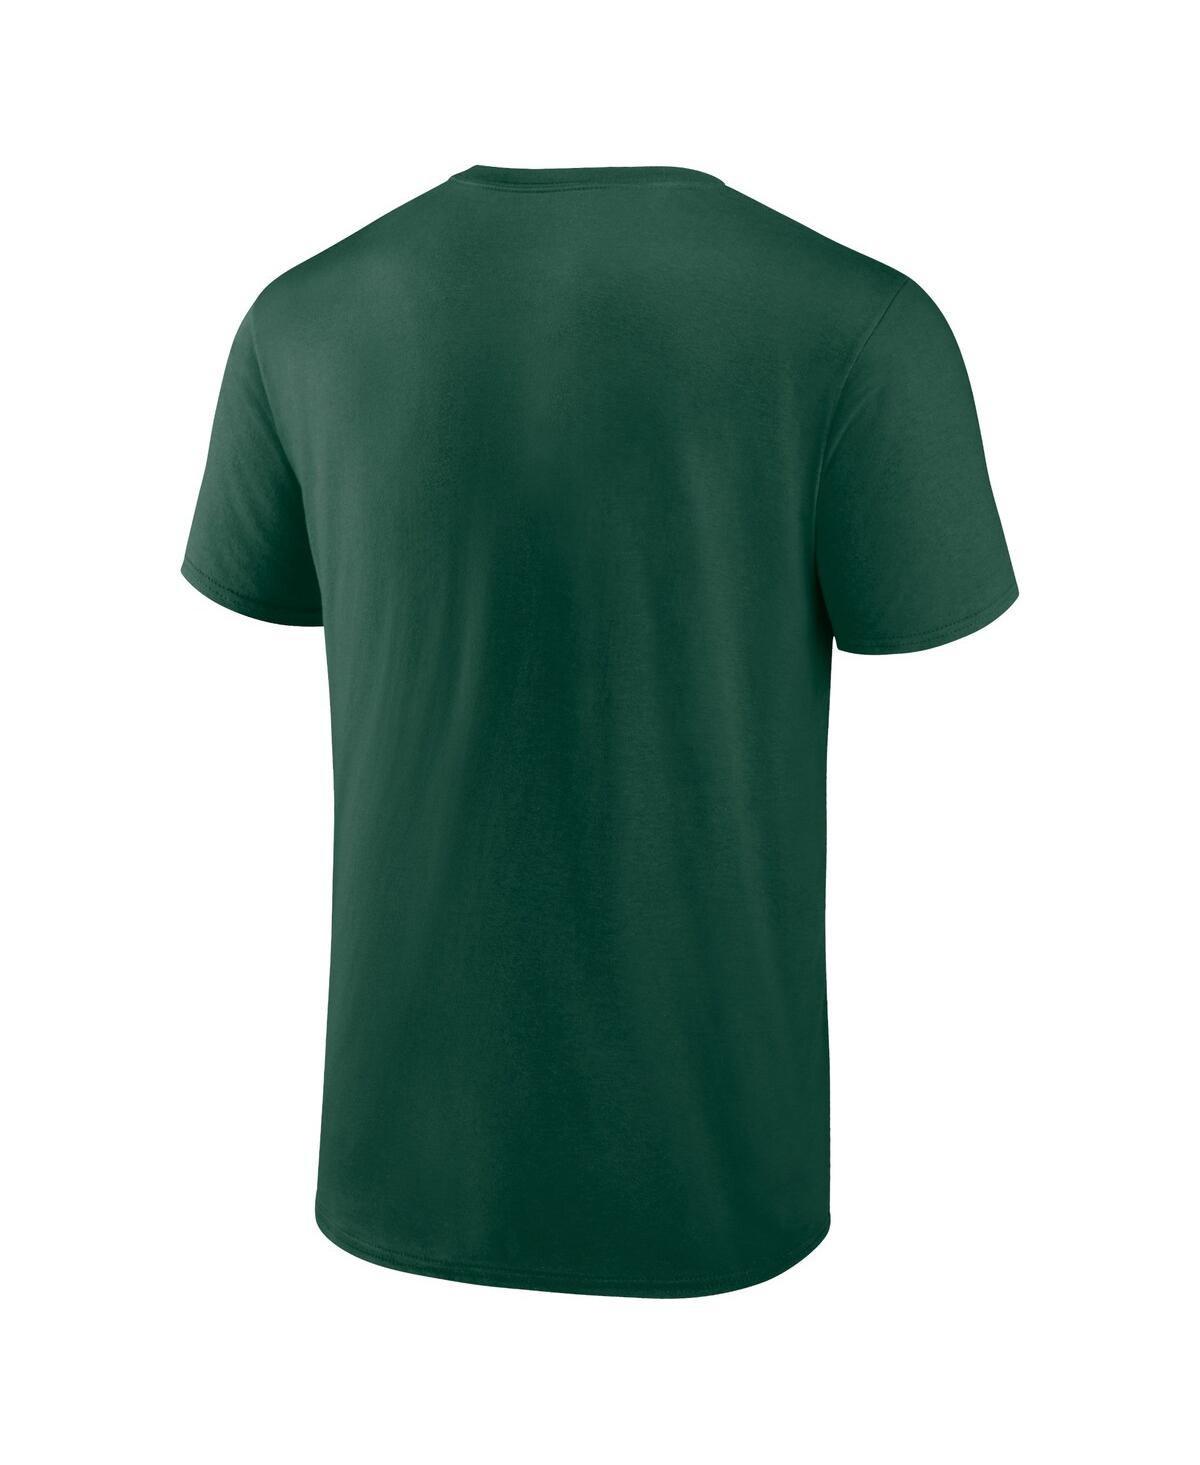 Shop Fanatics Men's  Green Oakland Athletics Rebel T-shirt